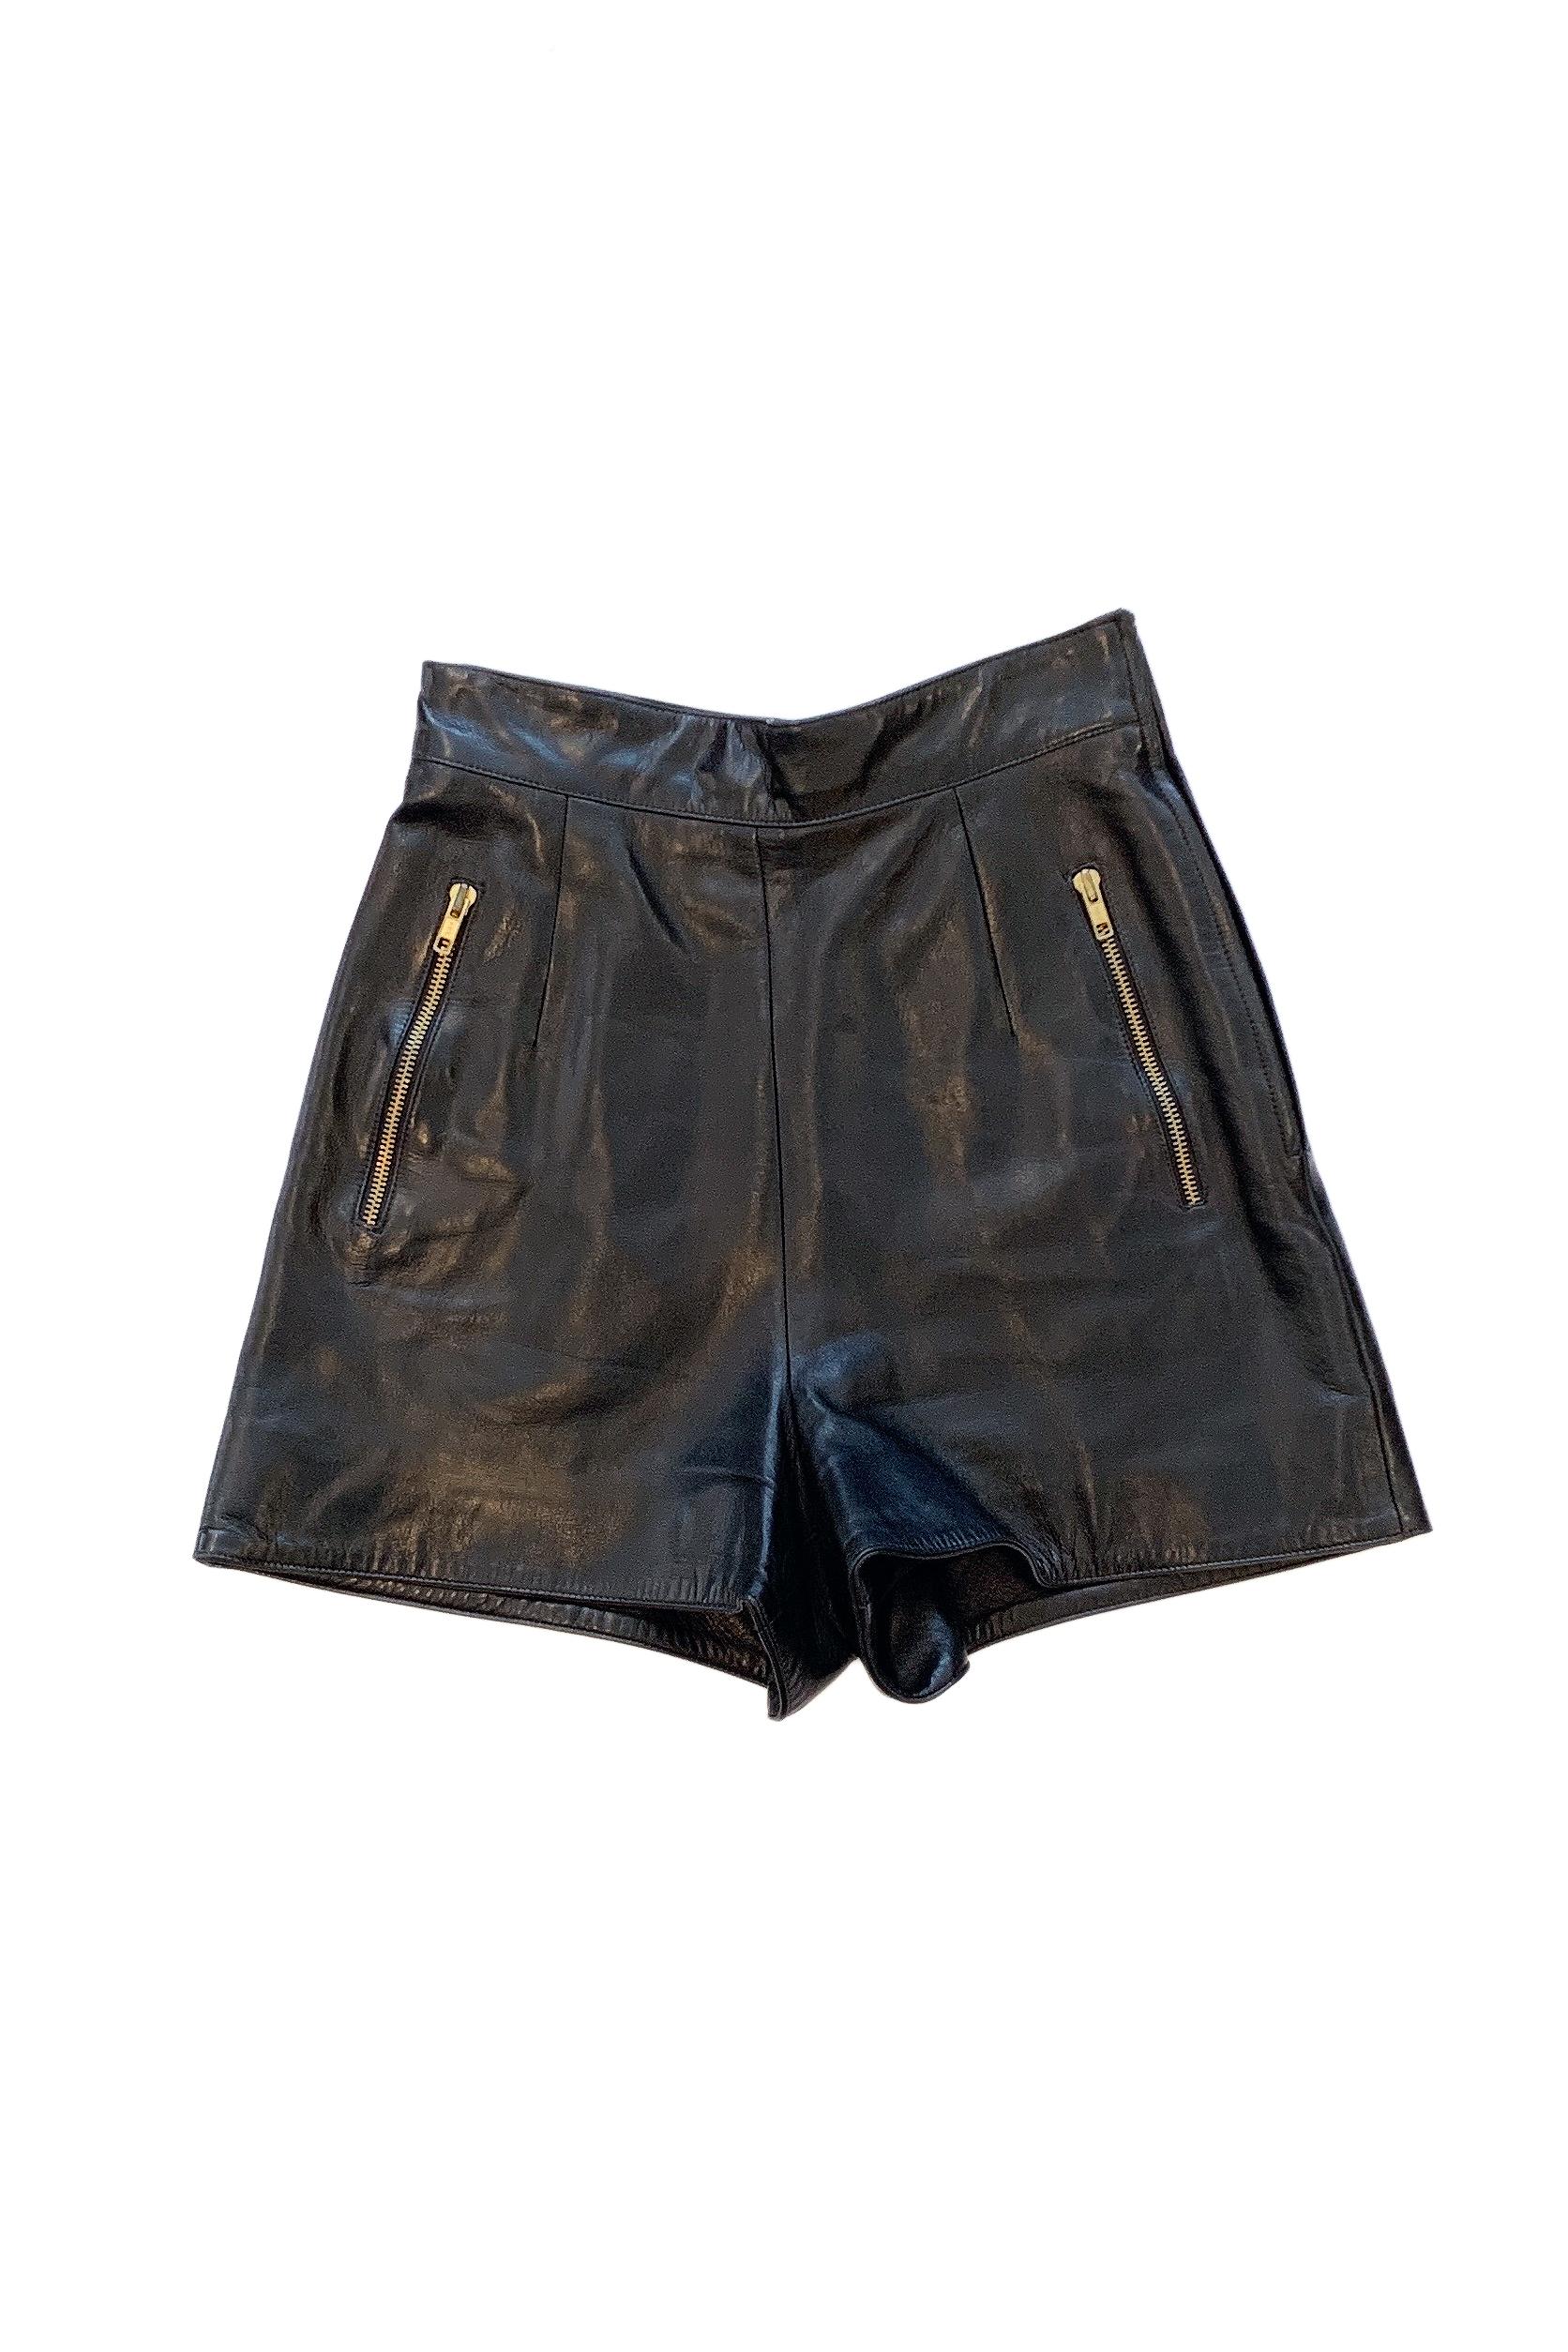 Claude Montana - Short en cuir noir avec fermetures éclair dorées Pour femmes en vente